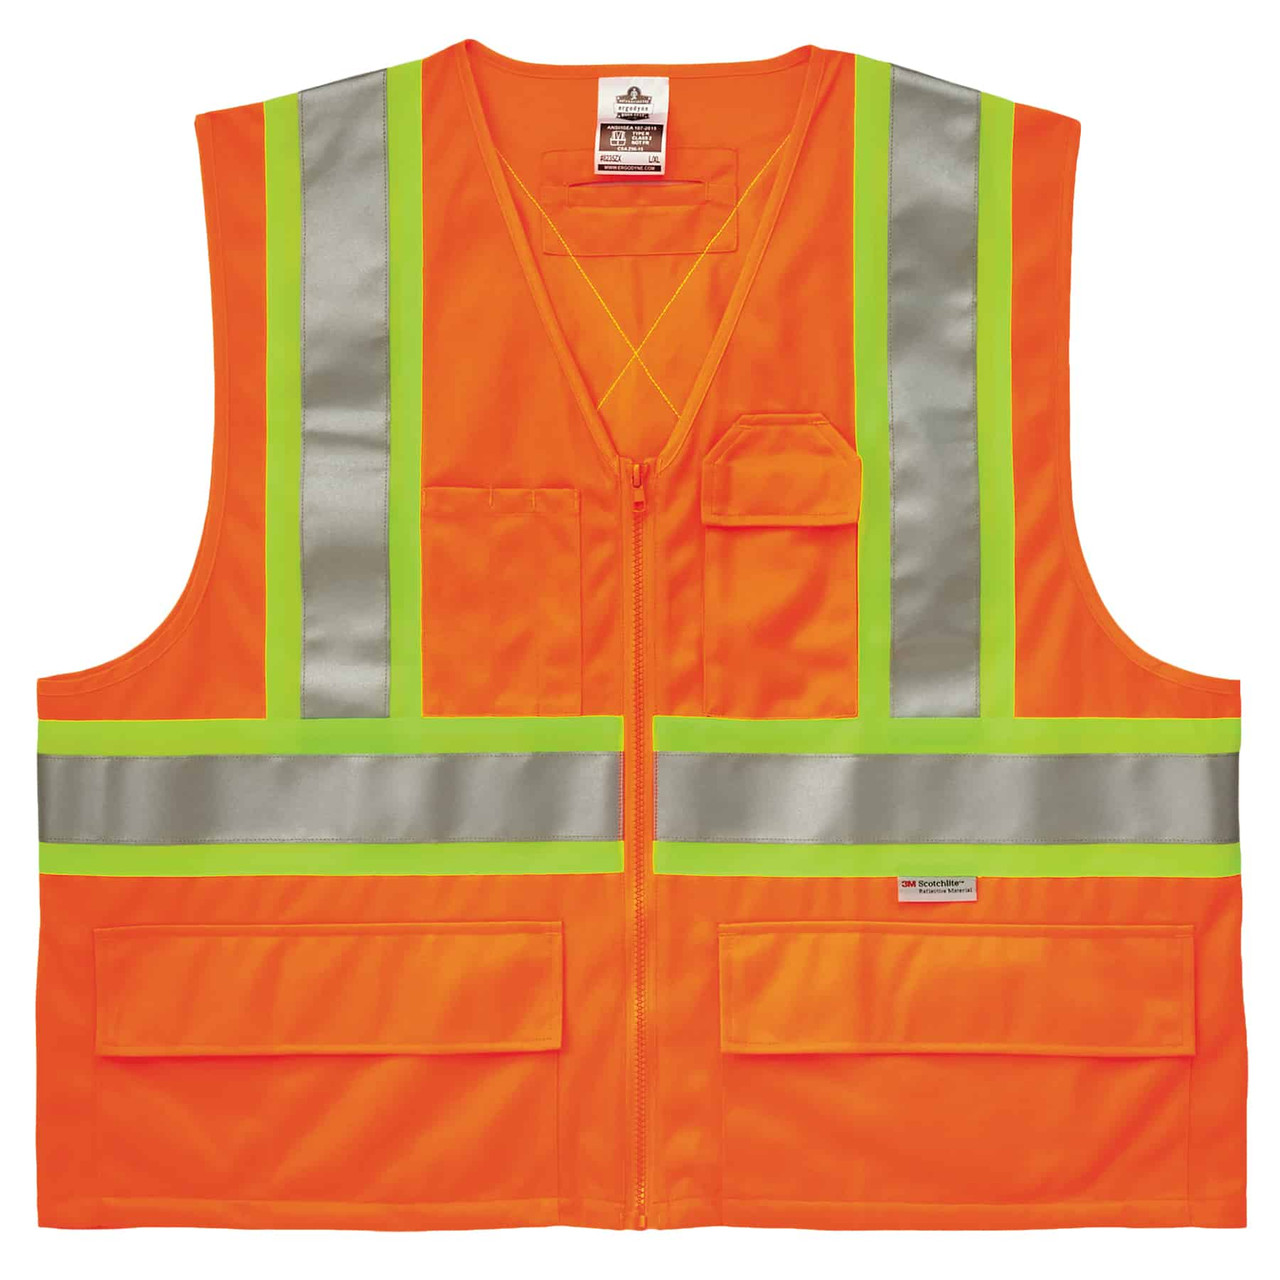 3M Scotchlite Safety Vest with Pockets and Zipper, Class 2, Size L